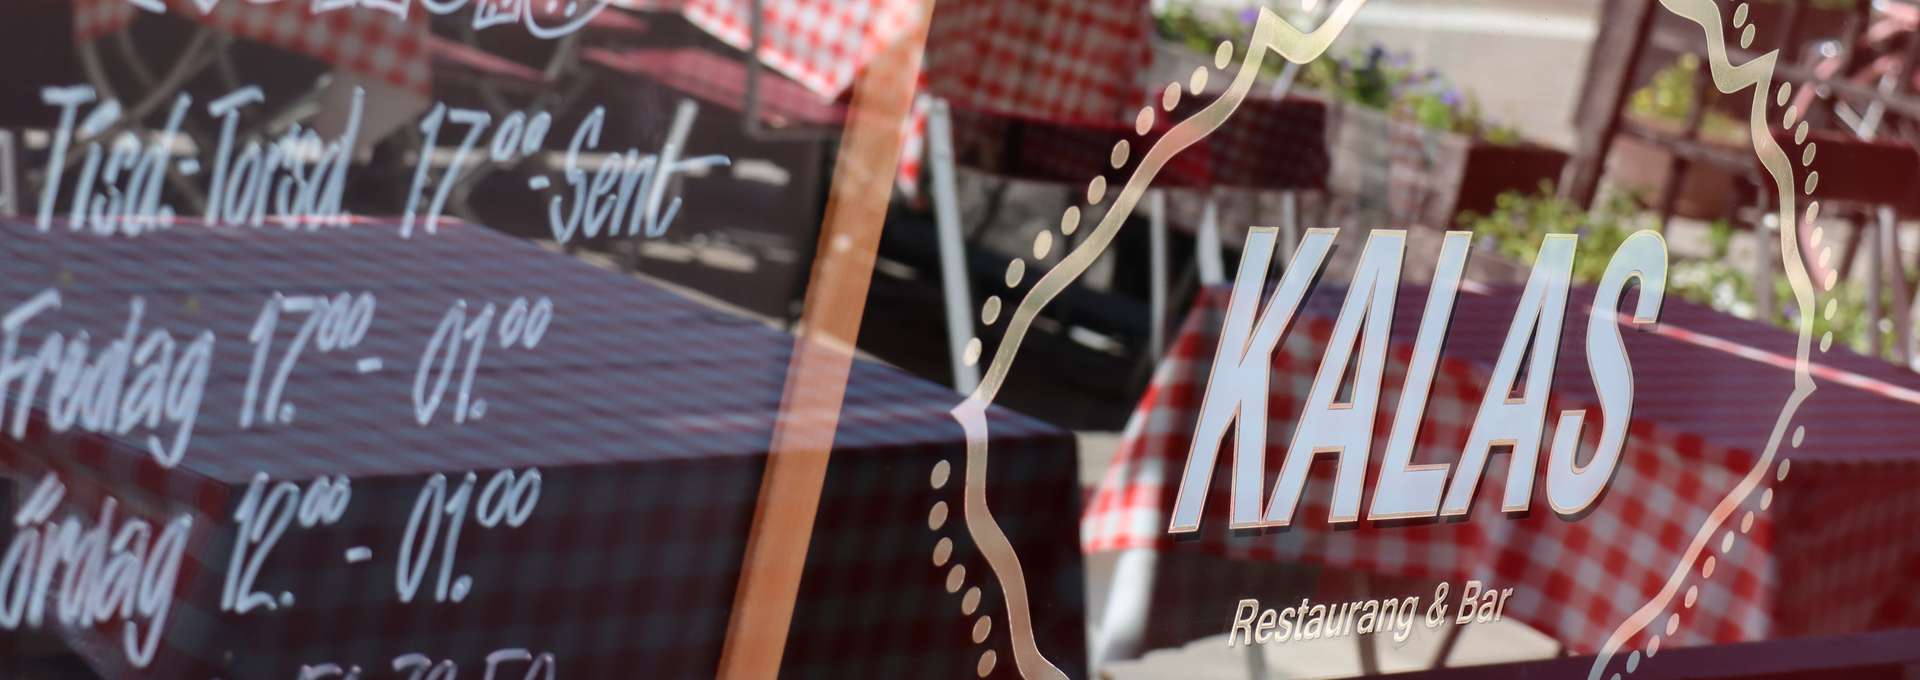 närbild på ett skyltfönster med texten Kalas restaurang & bar på